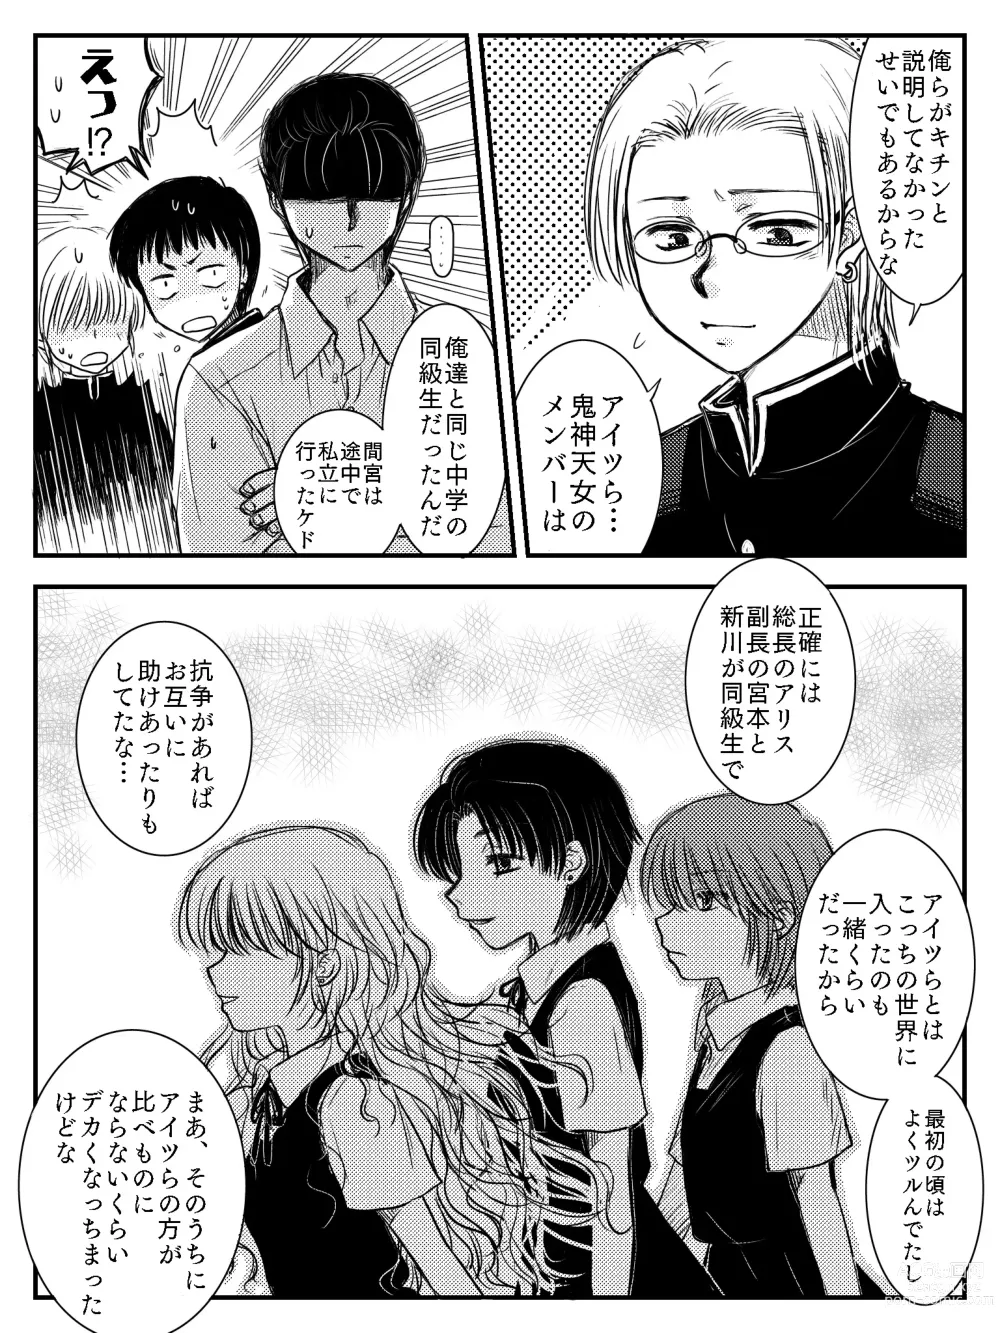 Page 14 of doujinshi LADIES NAVIGATION Episode 4